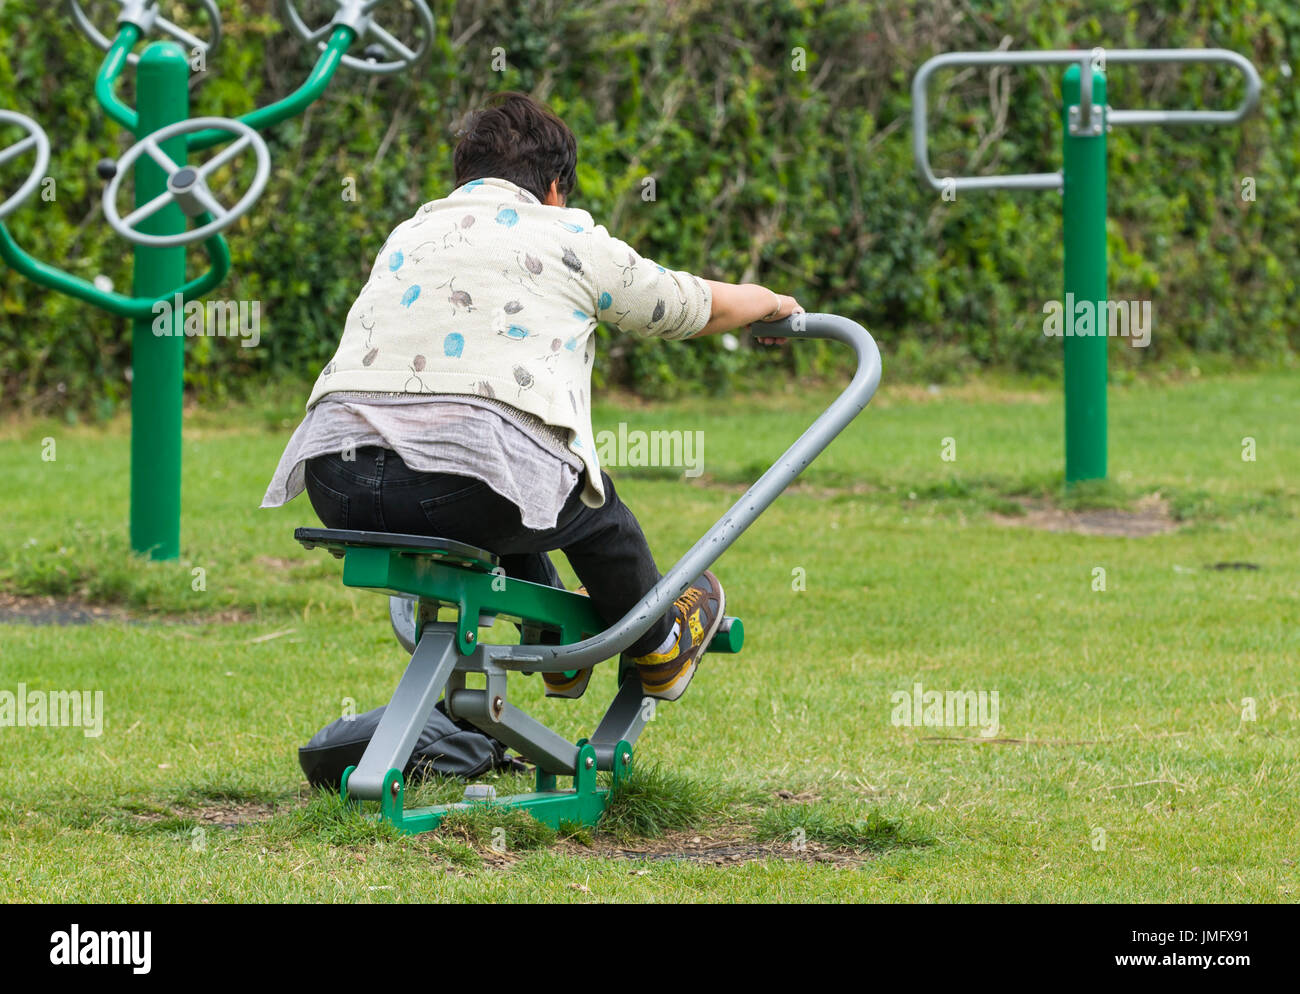 Sport en plein air. Dame d'âge moyen à l'aide d'un appareil à l'extérieur de sport à Worthing, West Sussex, Angleterre, Royaume-Uni. Banque D'Images